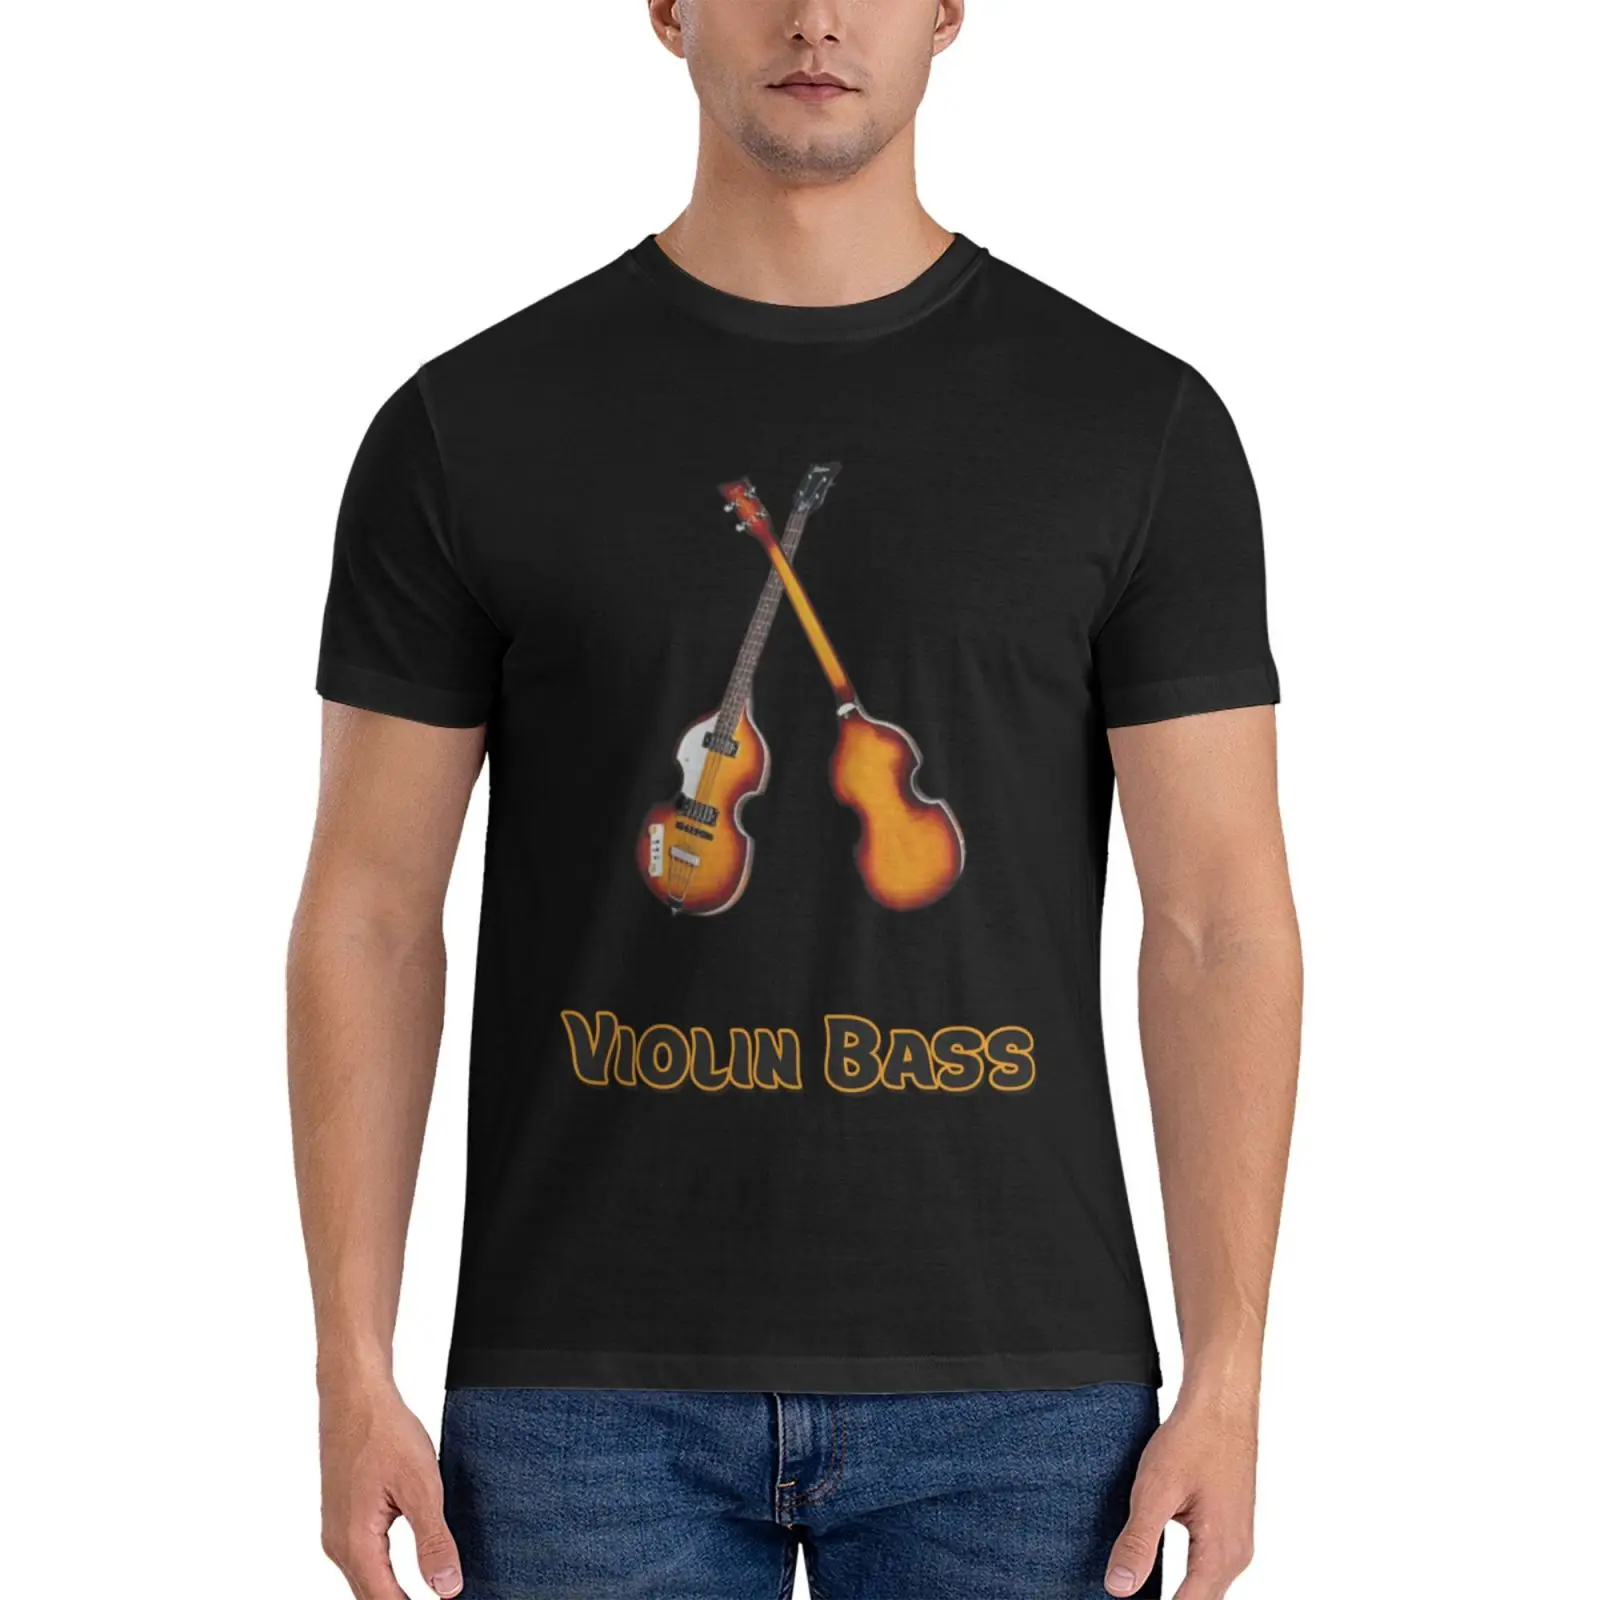 Hofner Violin Bass - музыкальные инструменты, классическая футболка, милые топы, футболки для любителей спорта, мужские тренировочные рубашки, летние топы